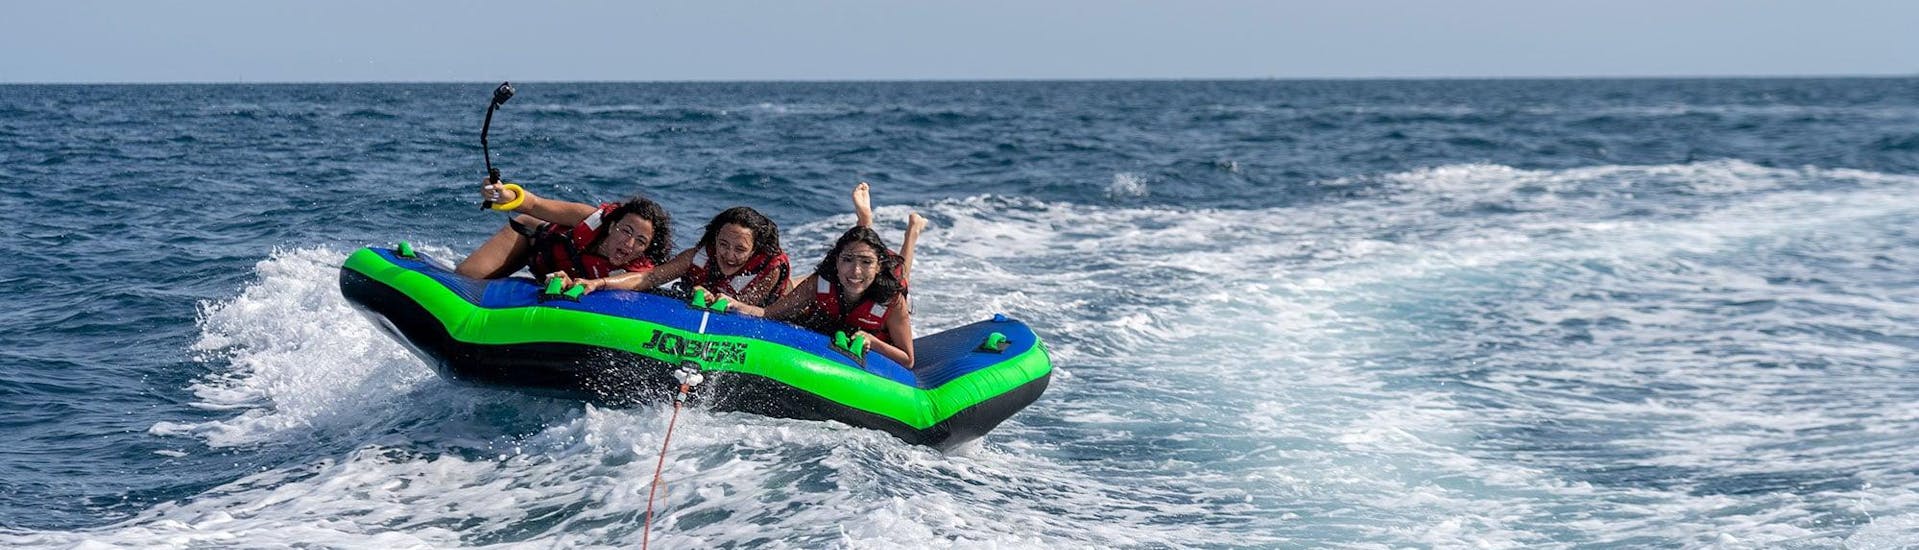 Drie vrouwen aan boord van een Sea Riders opblaasbaar matras gesleept door een boot voor de kust van Barcelona.